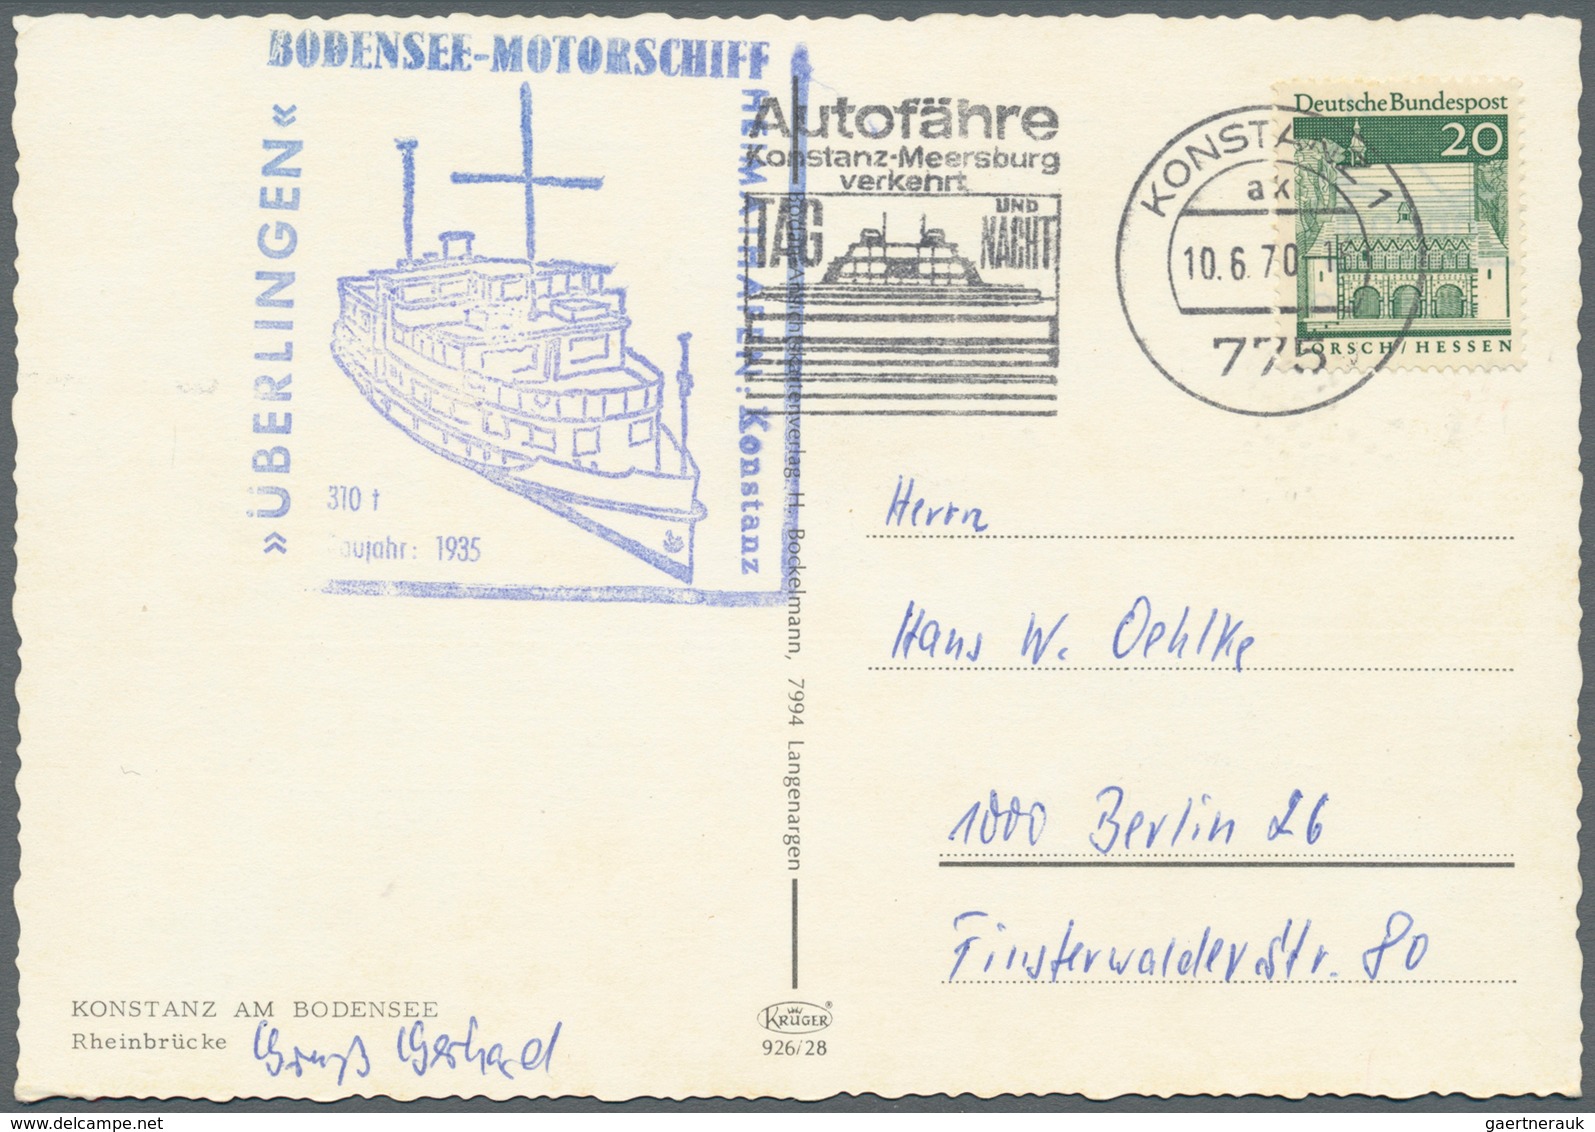 24850 Bodenseeschiffspost: 1896/1975, Sammlung von 92 Schiffspostbelegen aus Württemberg, Bayern, übriges